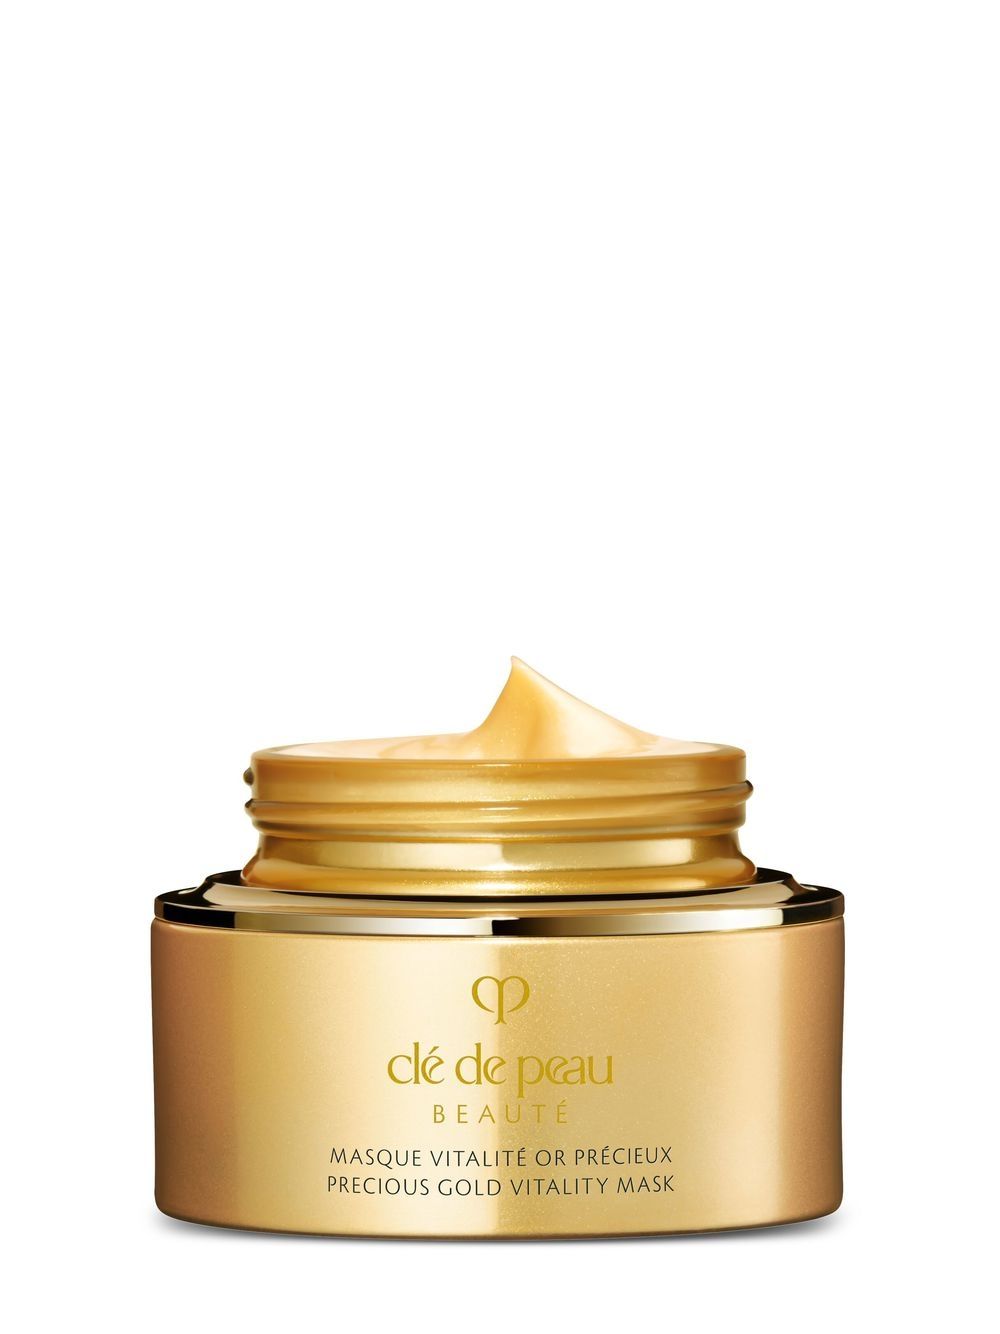 san pham Cle de Peau Beaute Precious Gold Vitality Mask - Chọn lựa những mỹ phẩm phù hợp cho chuyến du hành của bạn